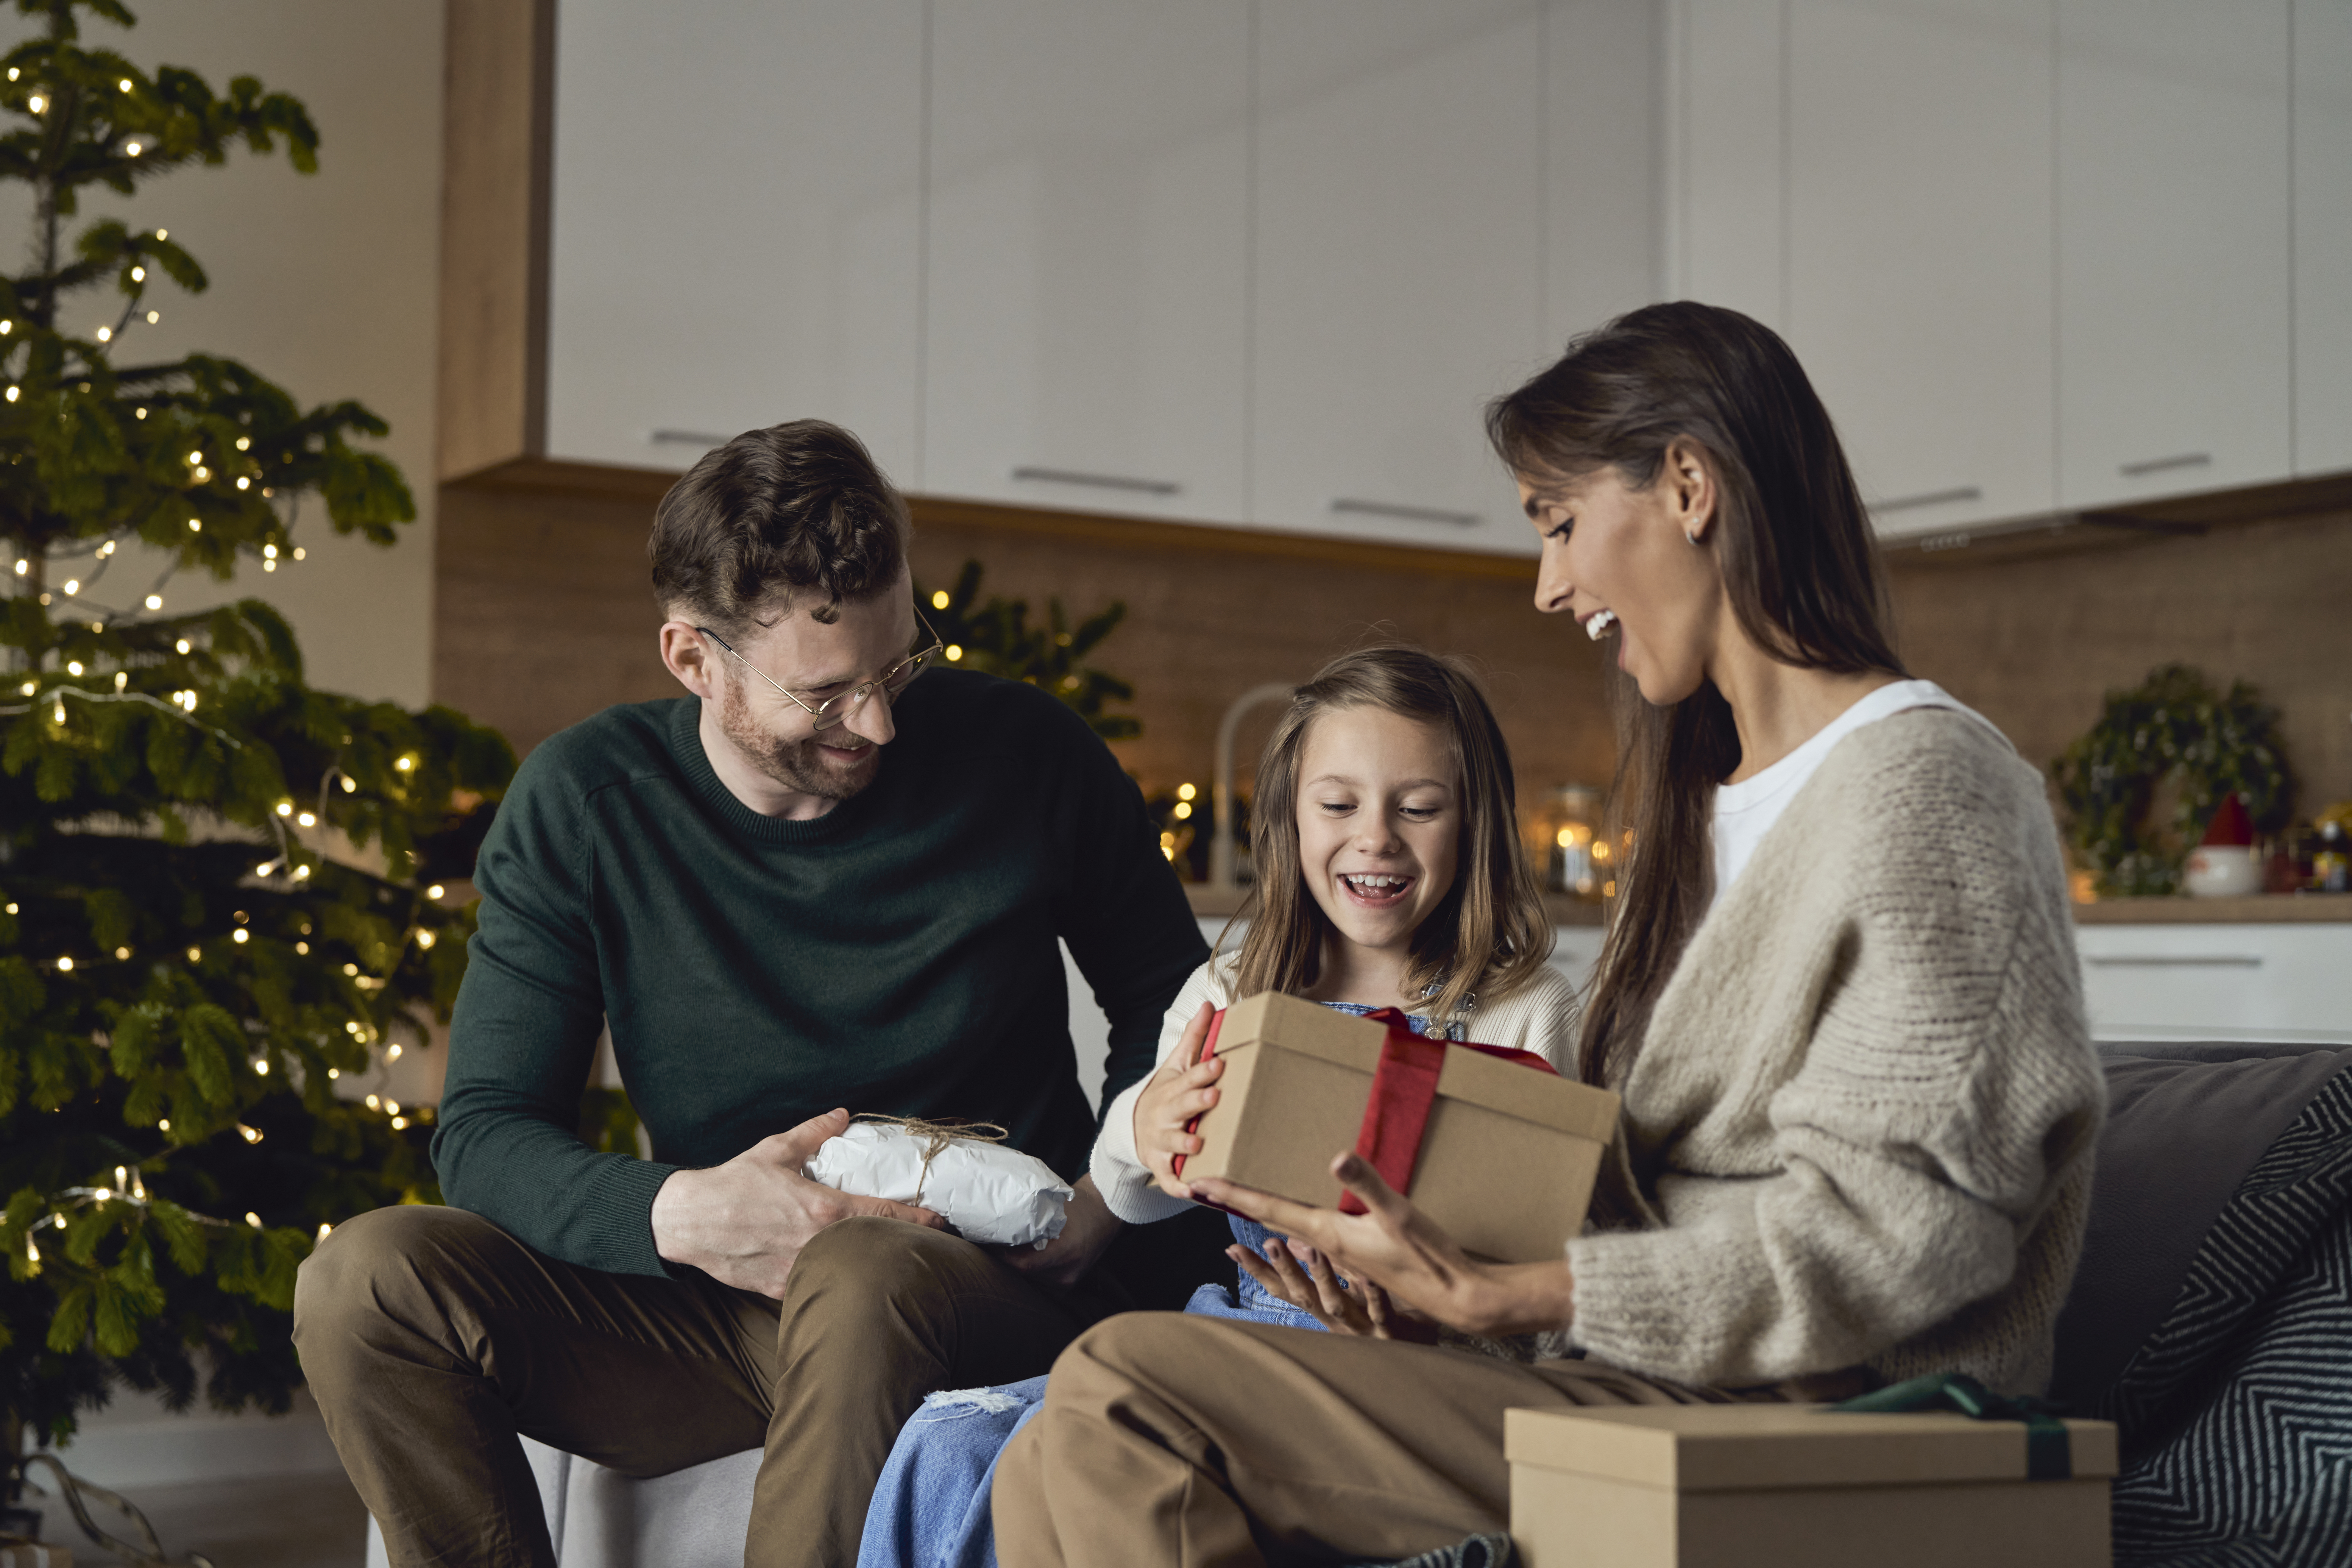 Des parents heureux offrent un cadeau à leur fille à Noël | Source : Getty Images